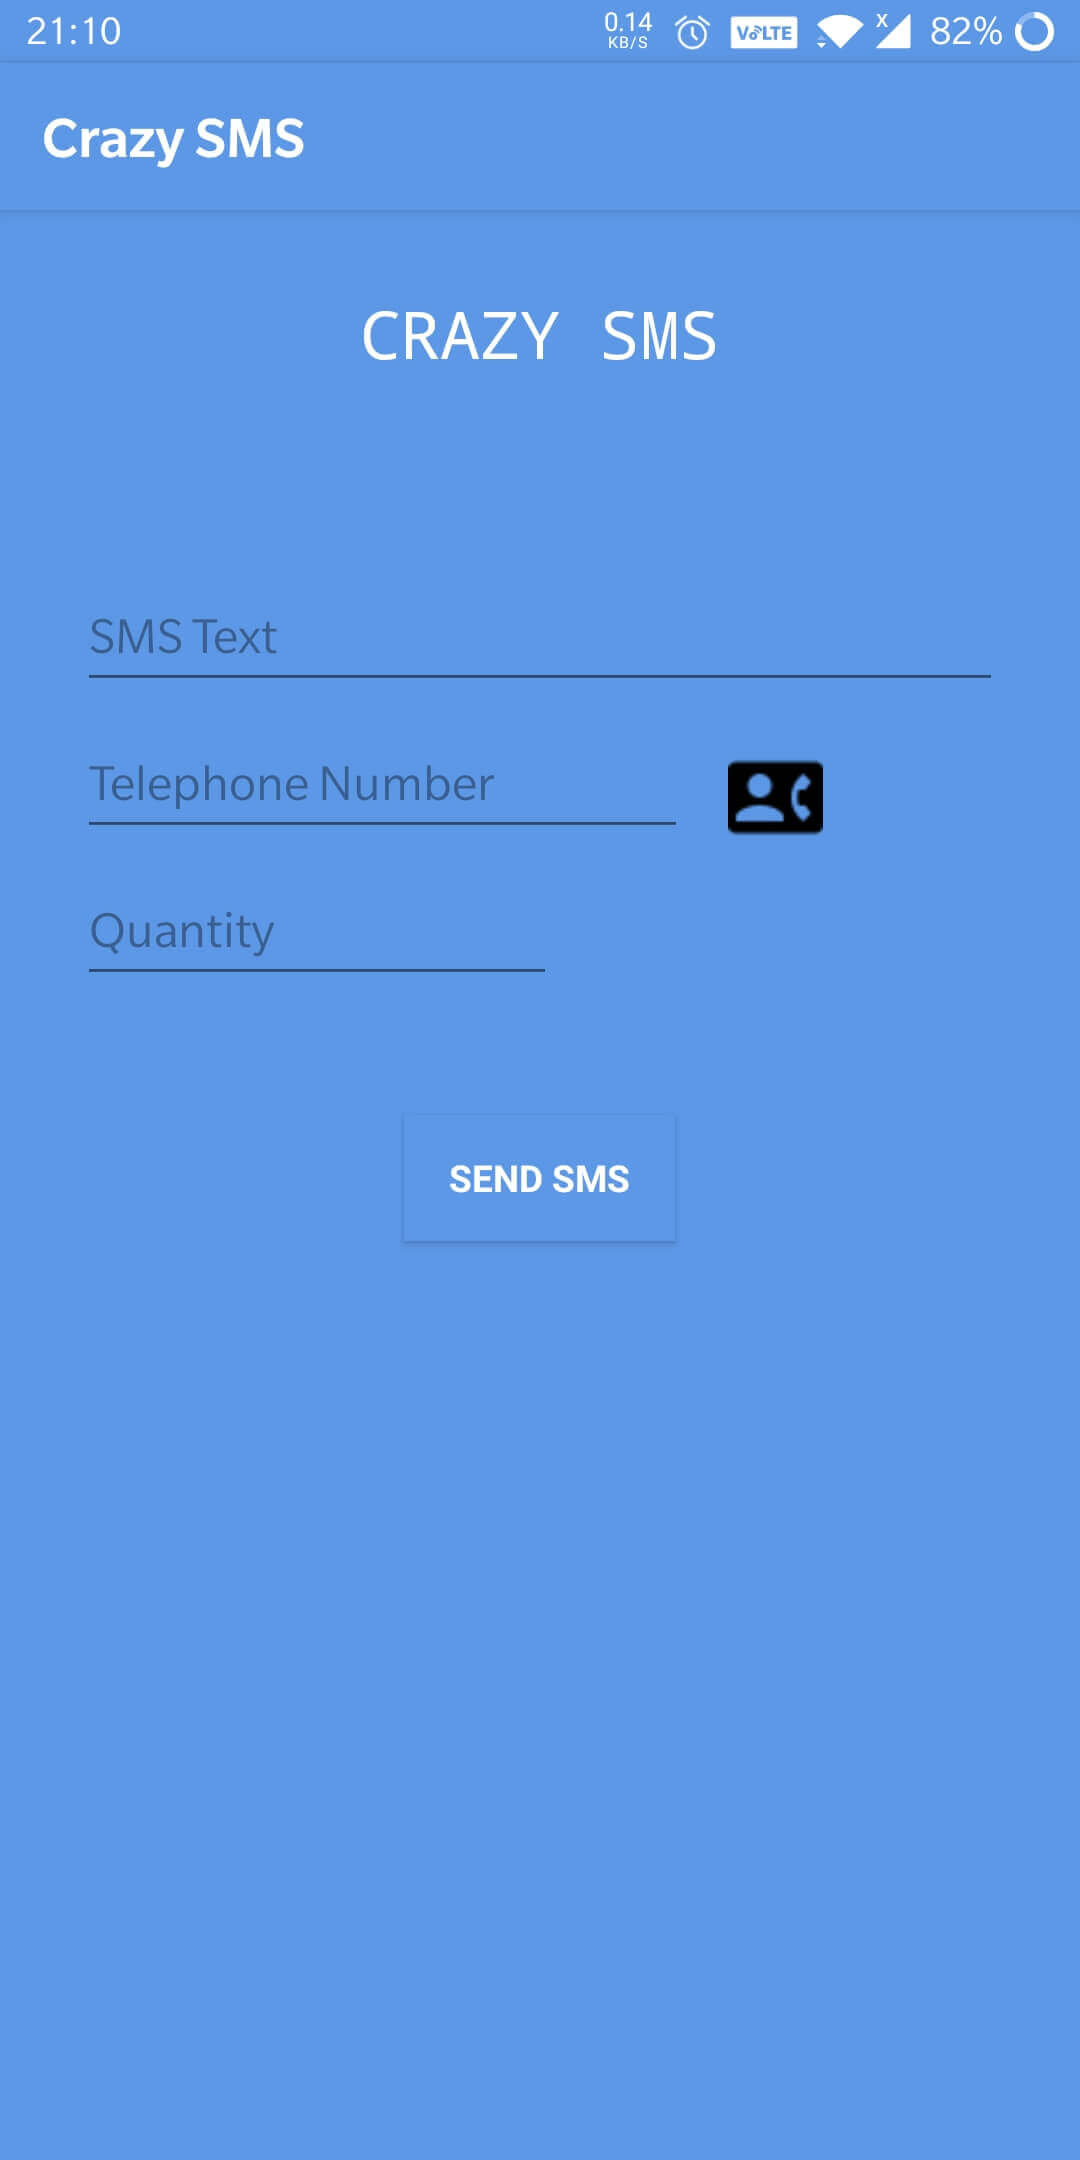 Step 2: Download Crazy SMS Apk